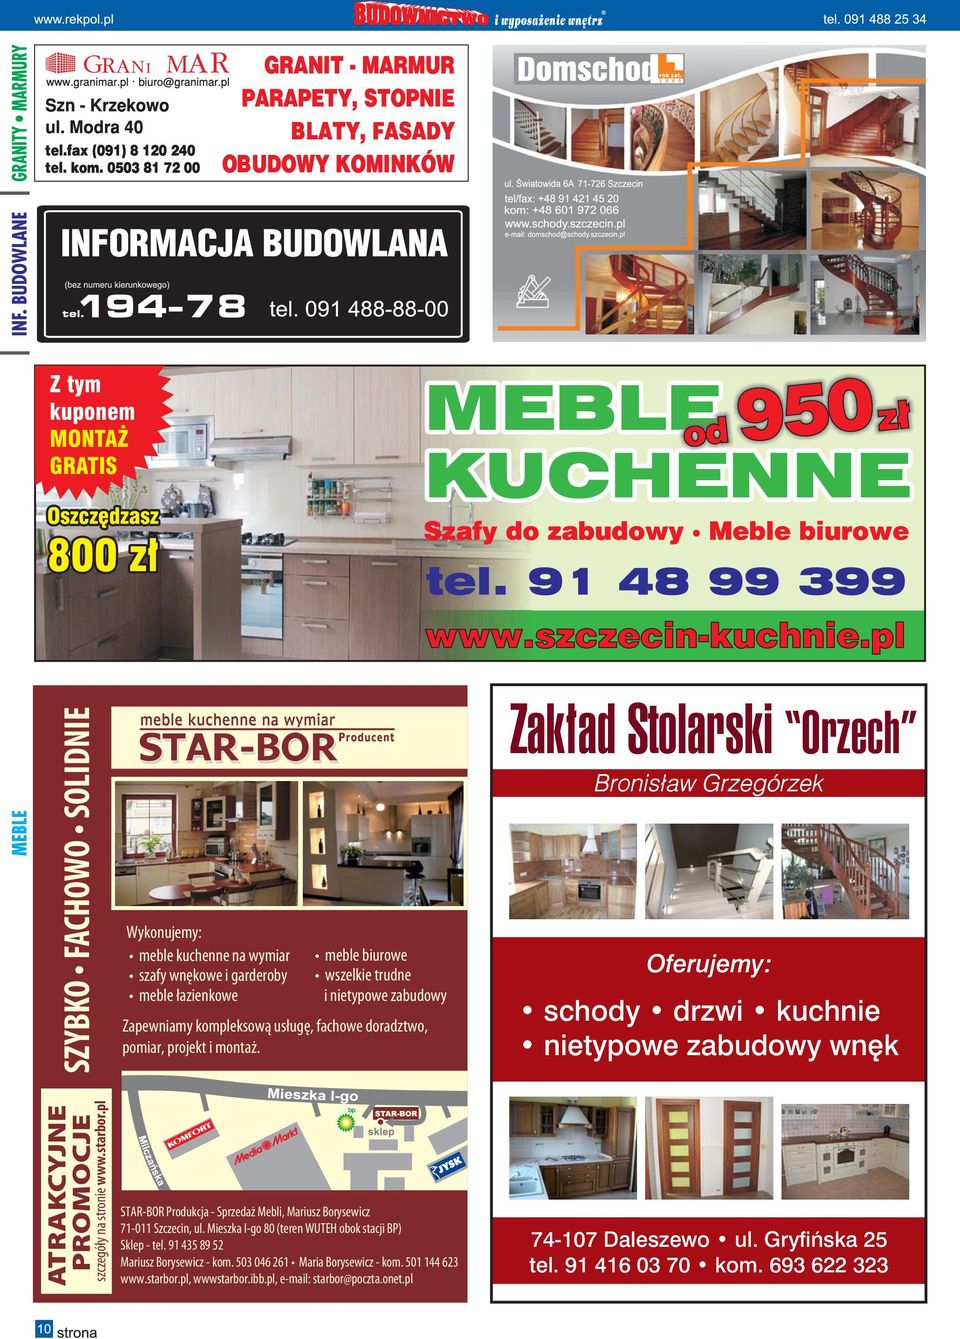 Zakład Stolarski Orzech schody drzwi kuchnie nietypowe zabudowy wnęk ATRAKCYJNE PROMOCJE szczegóły na stronie www.starbor.